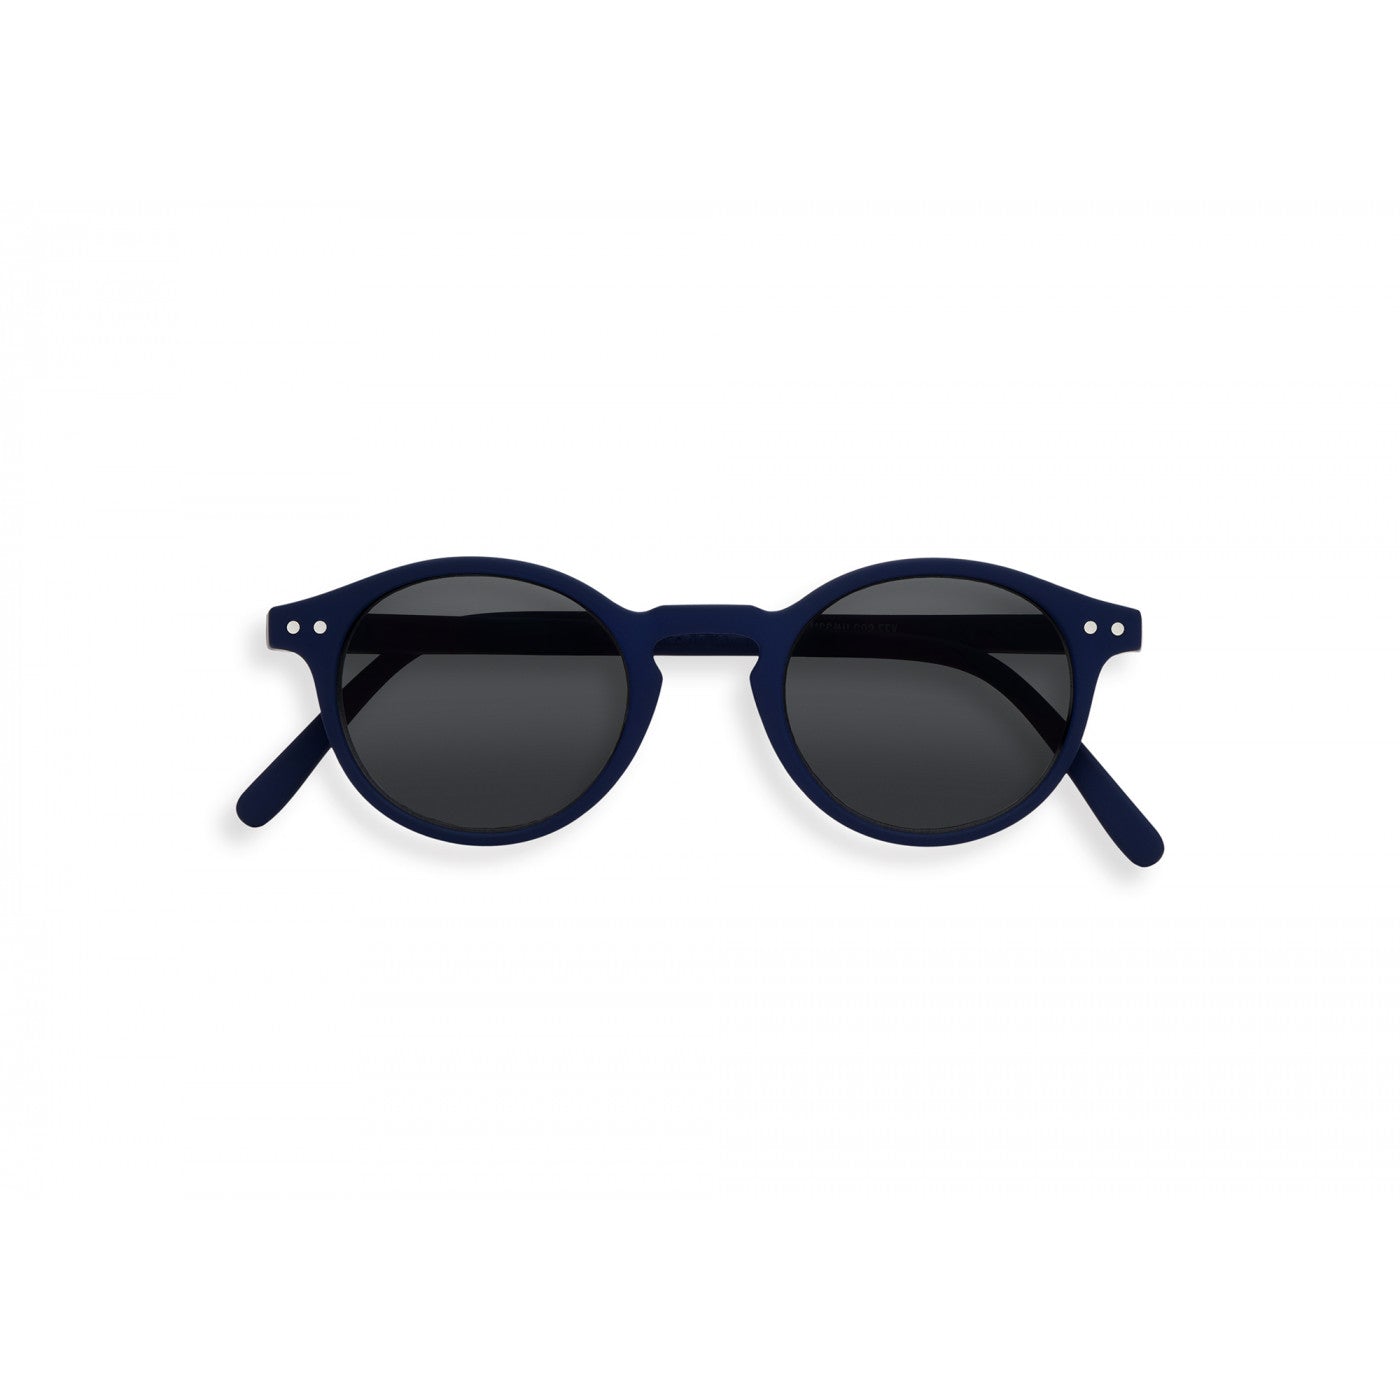 lunettes de soleil junior #H sun Navy blue - IZIPIZI slmshc03_00 3701210401638